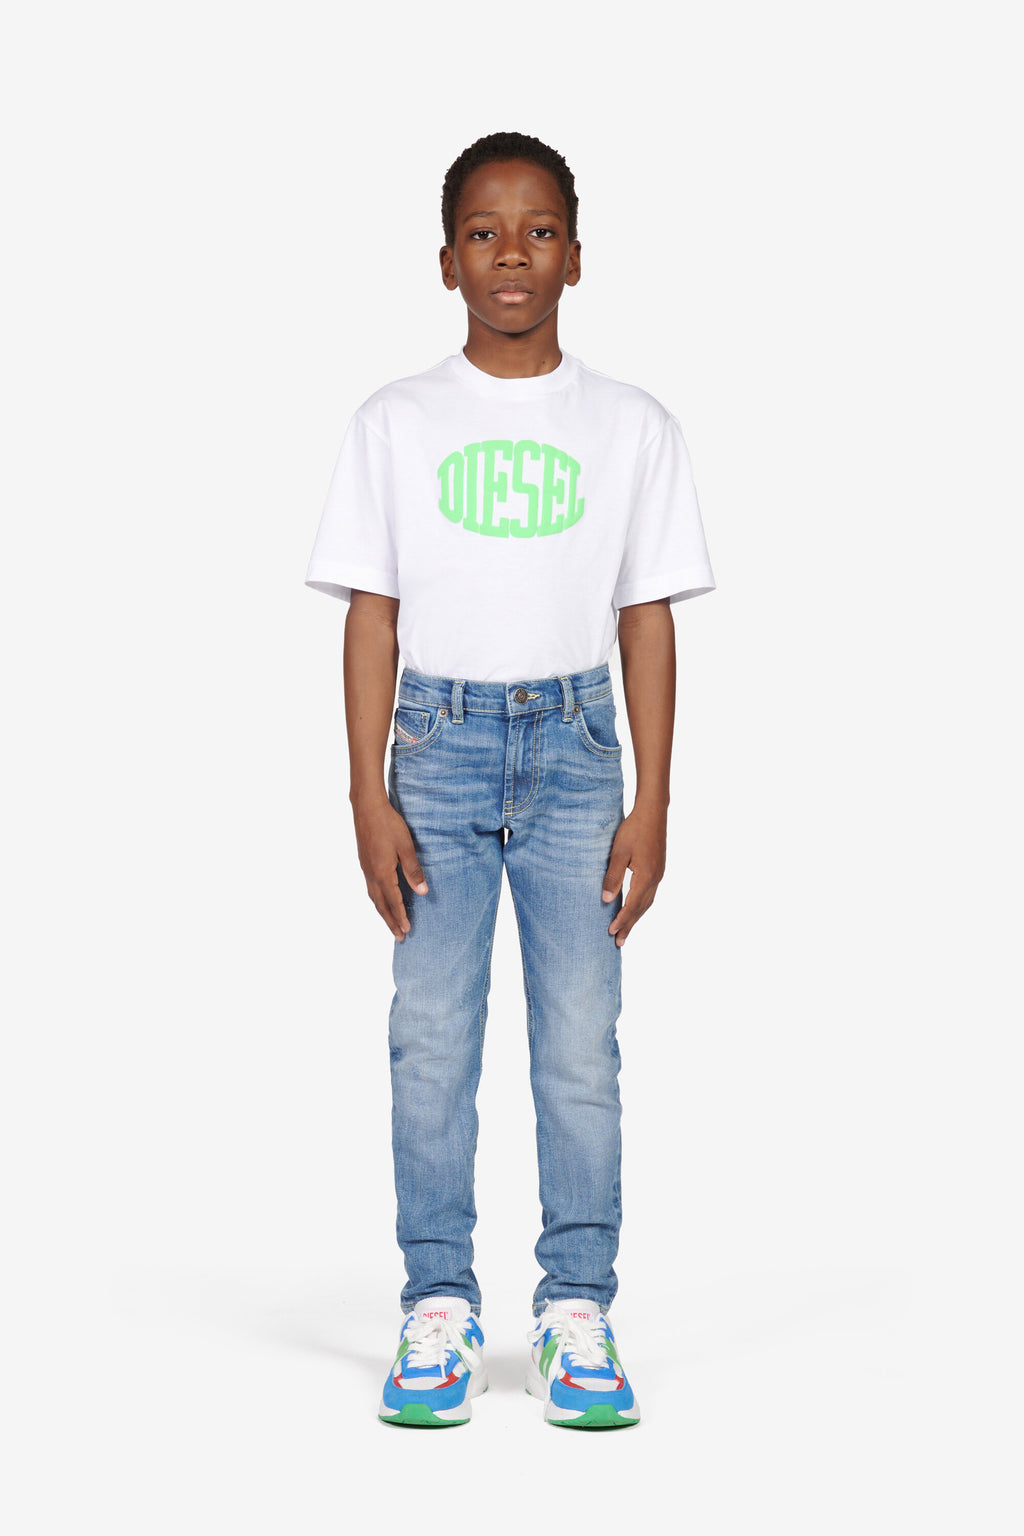 Diesel Kid: Jeans, Clothing, Accessories